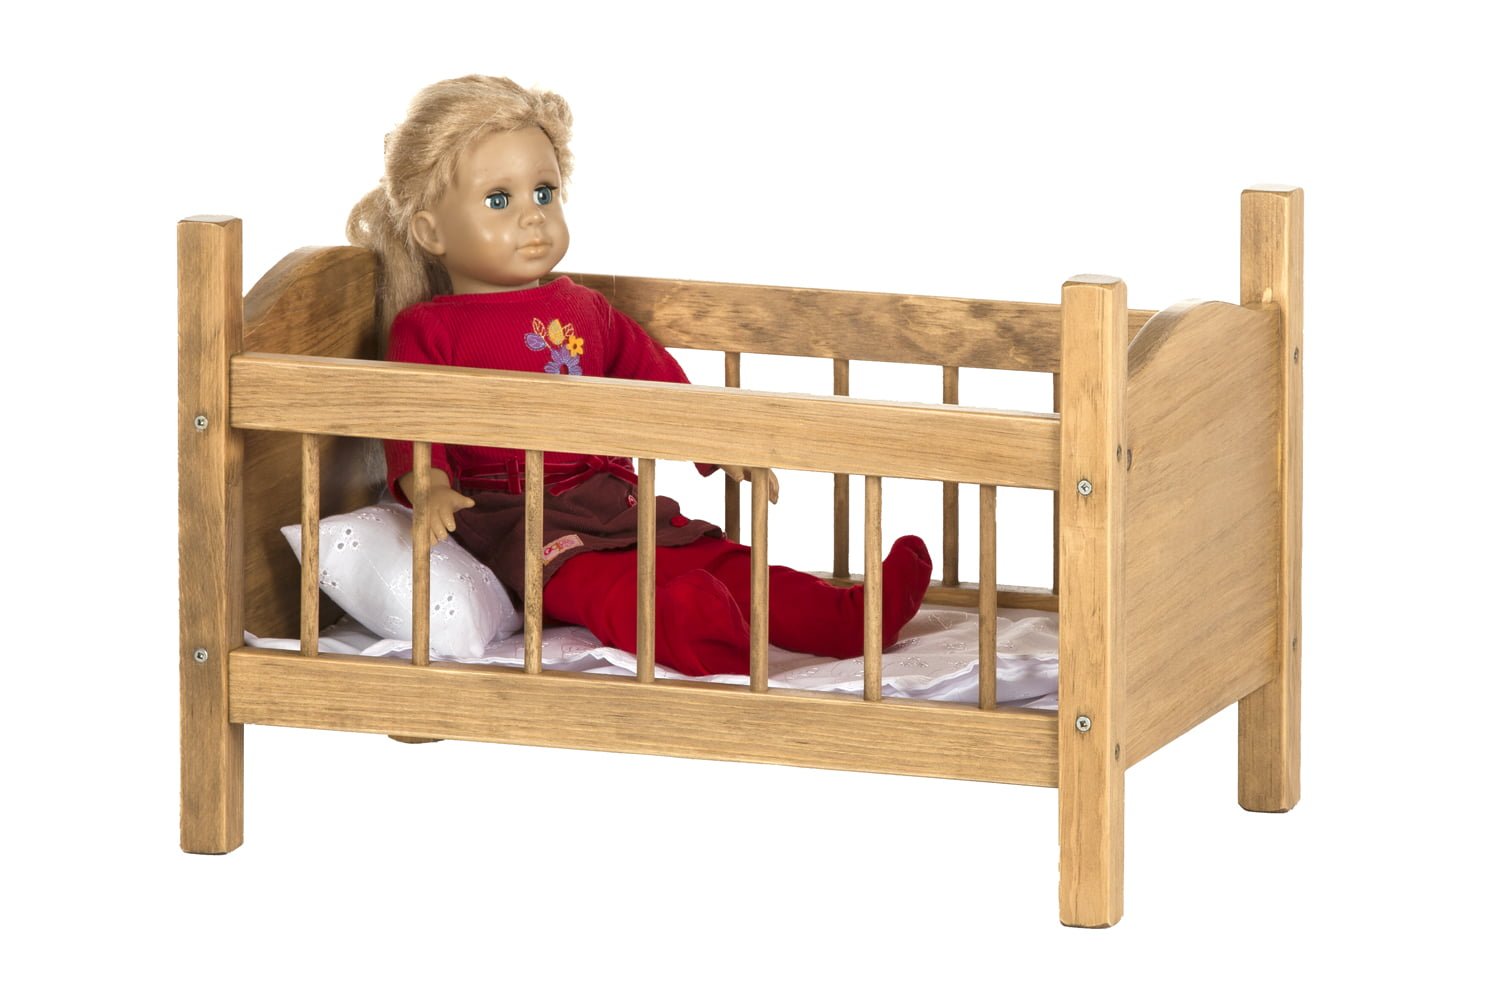 Toy Doll Crib for 12 Inch – 18 Inch Dolls